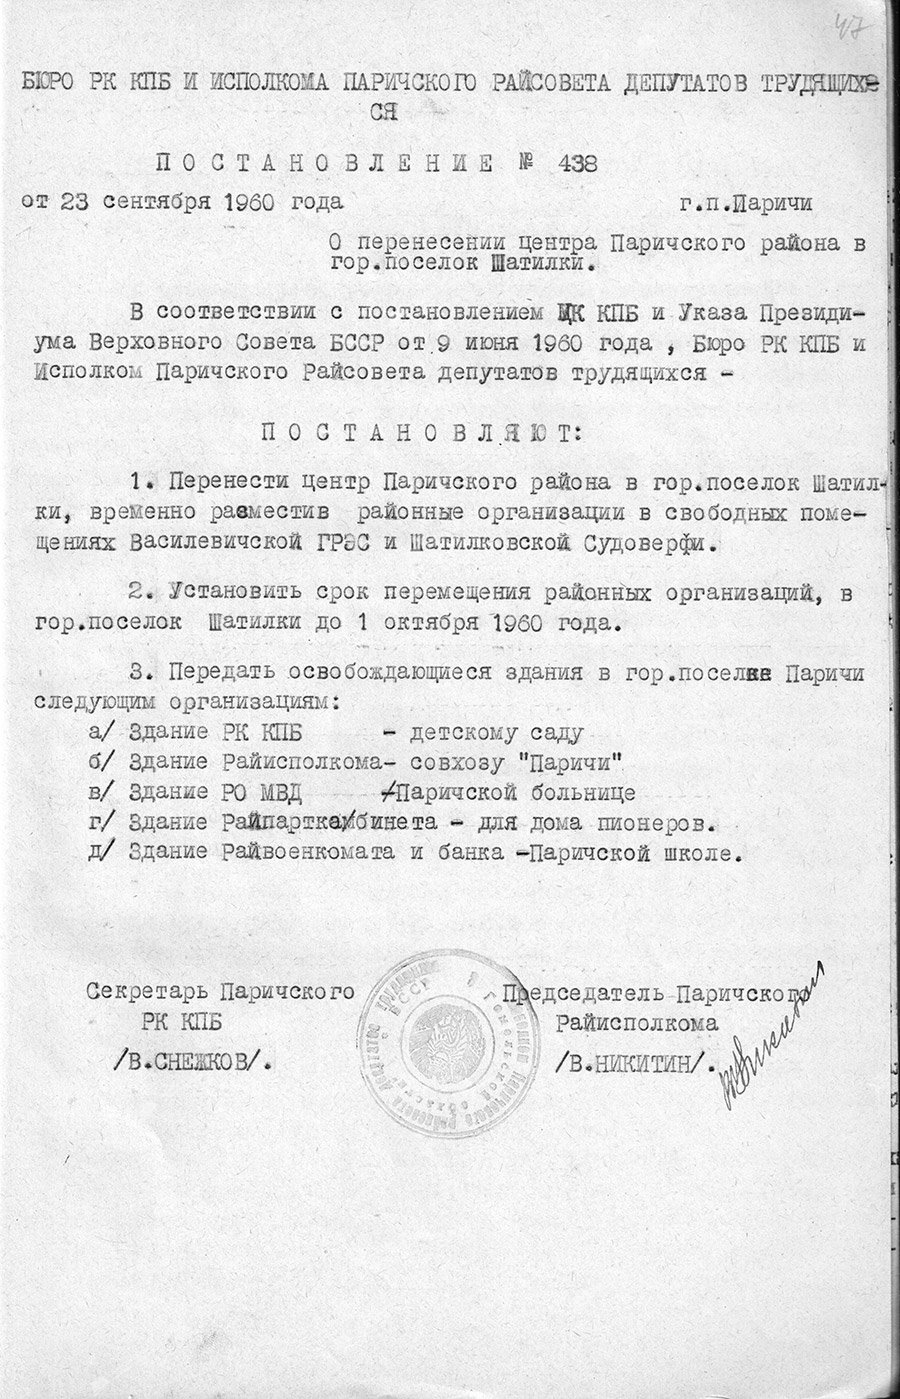 Beschluss Nr. 438 des Büros der Kommunistischen Partei der Republik Kasachstan und des Exekutivkomitees des Arbeiterdeputiertenrats des Paritschski-Bezirks «Über die Verlegung des Zentrums des Paritschski-Bezirks in das Gogod-Dorf Schatilki»-с. 0